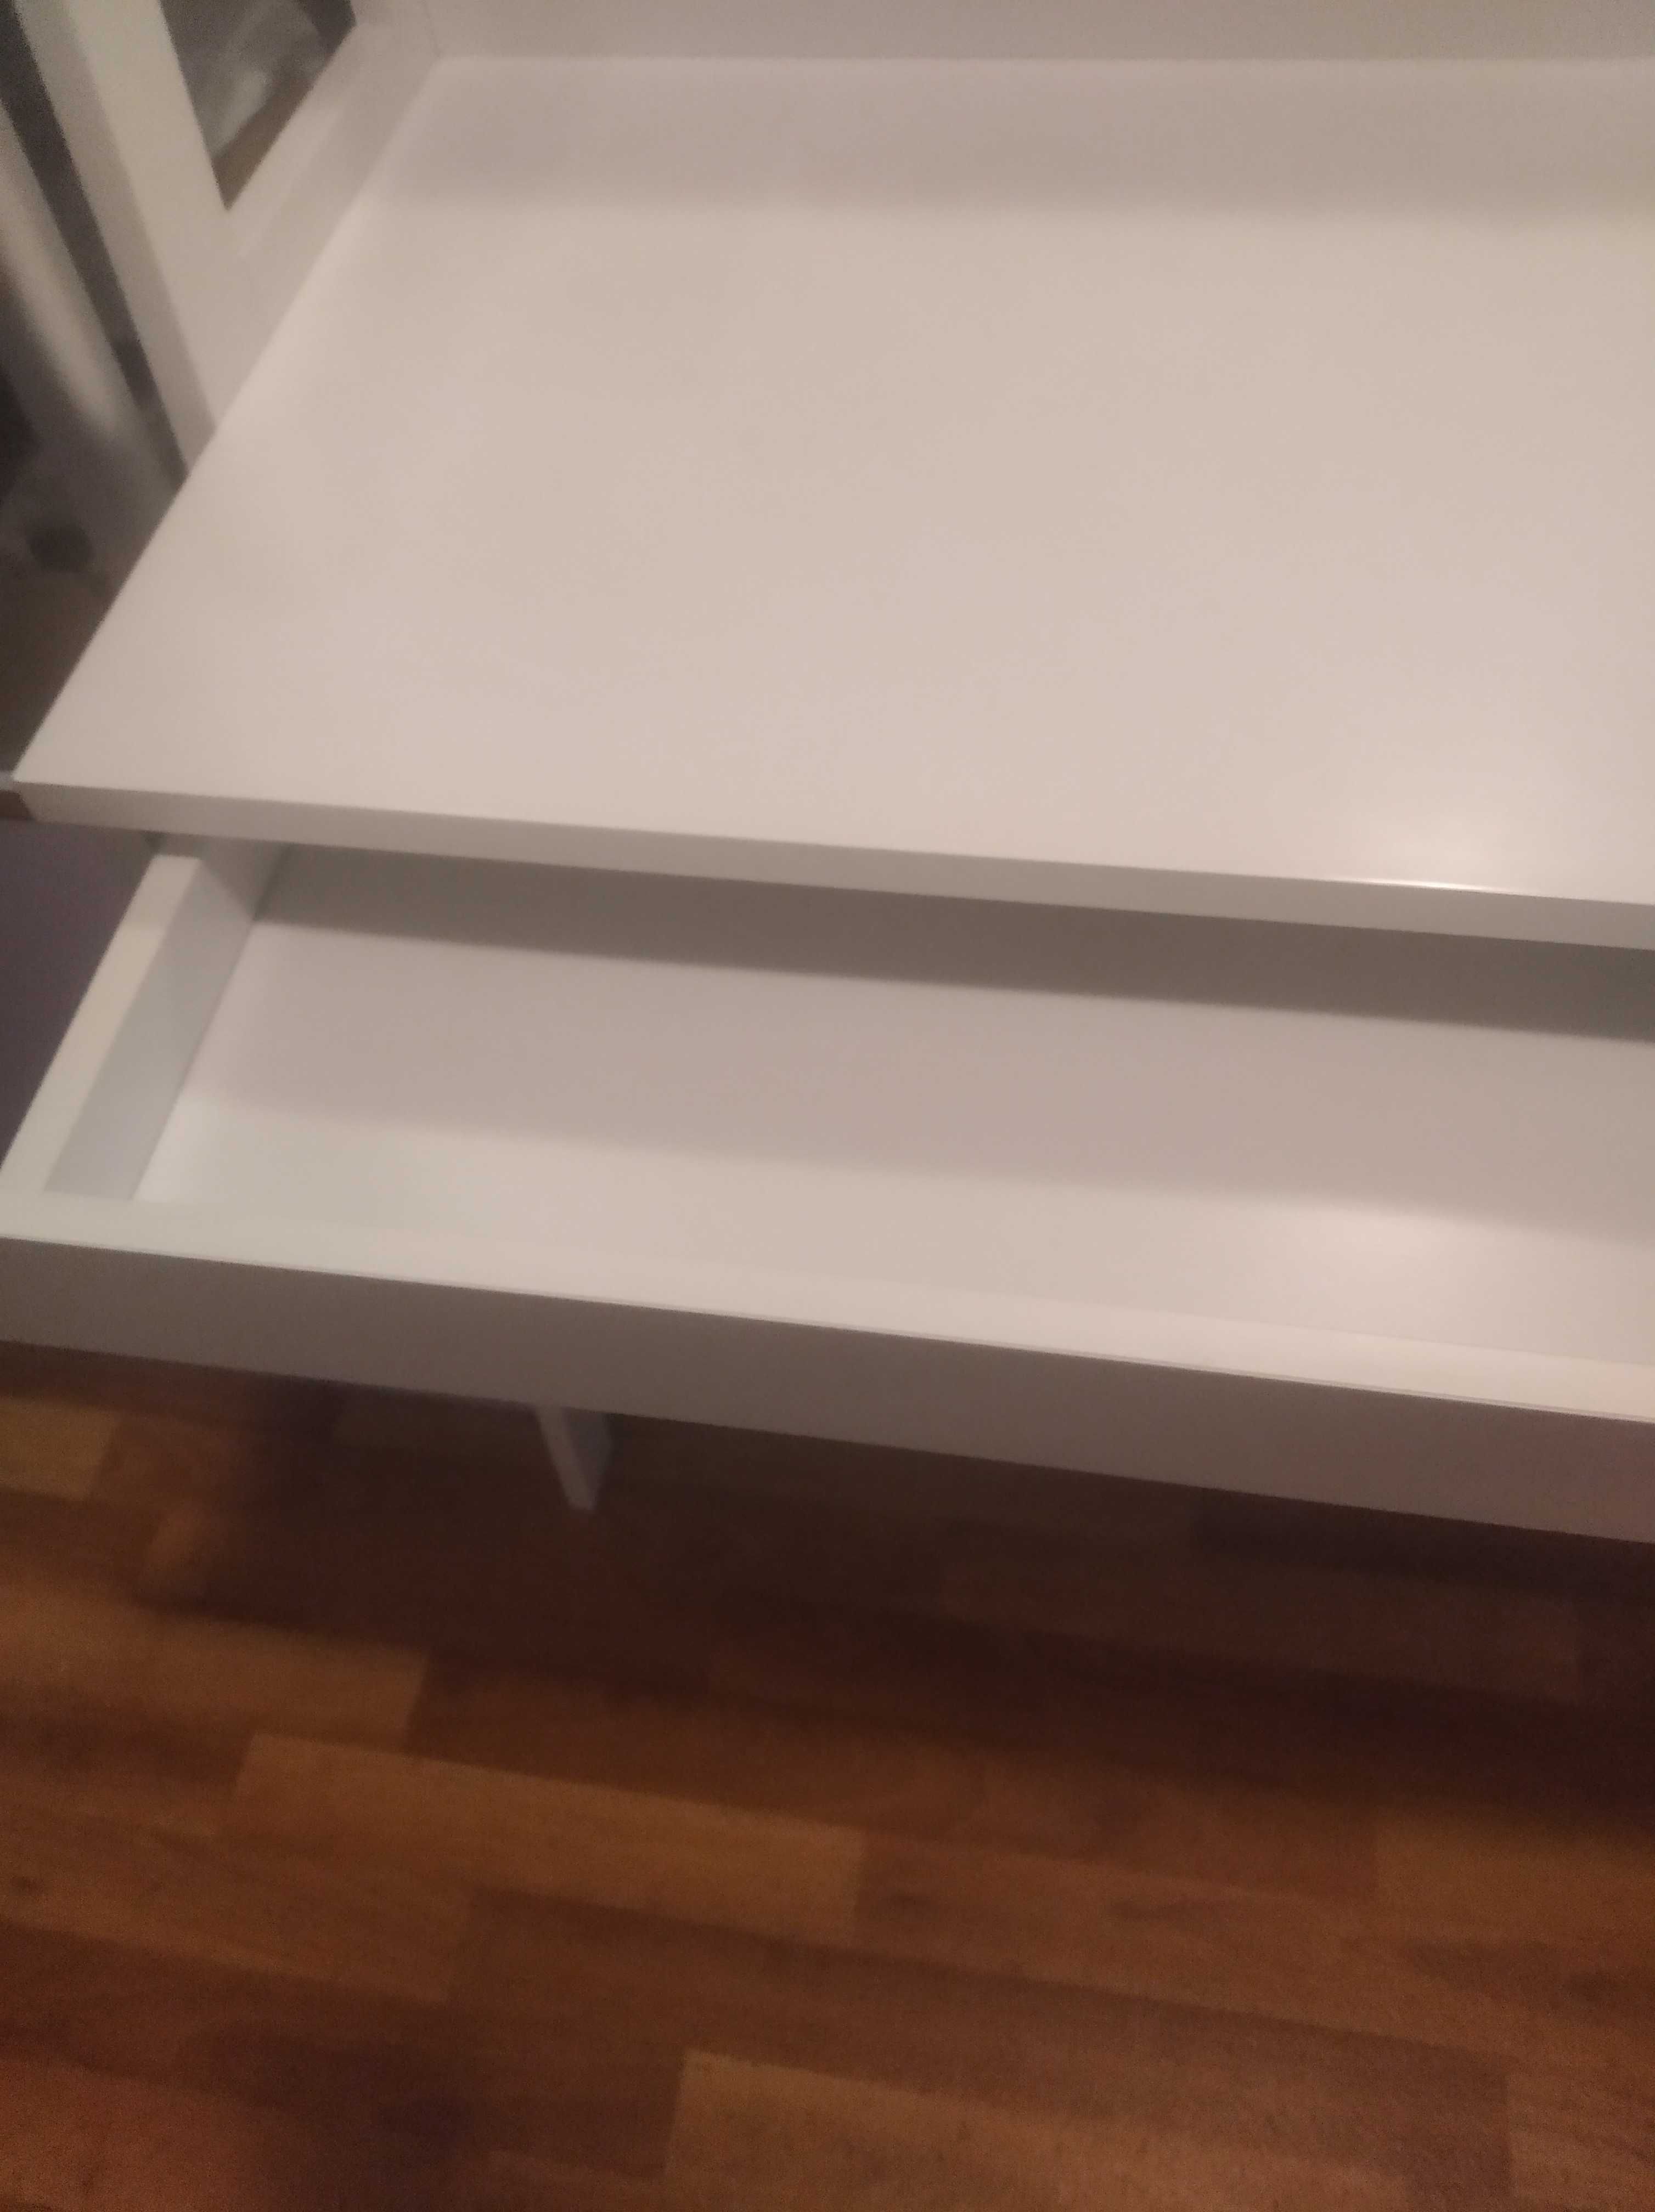 Рабочий стол IKEA